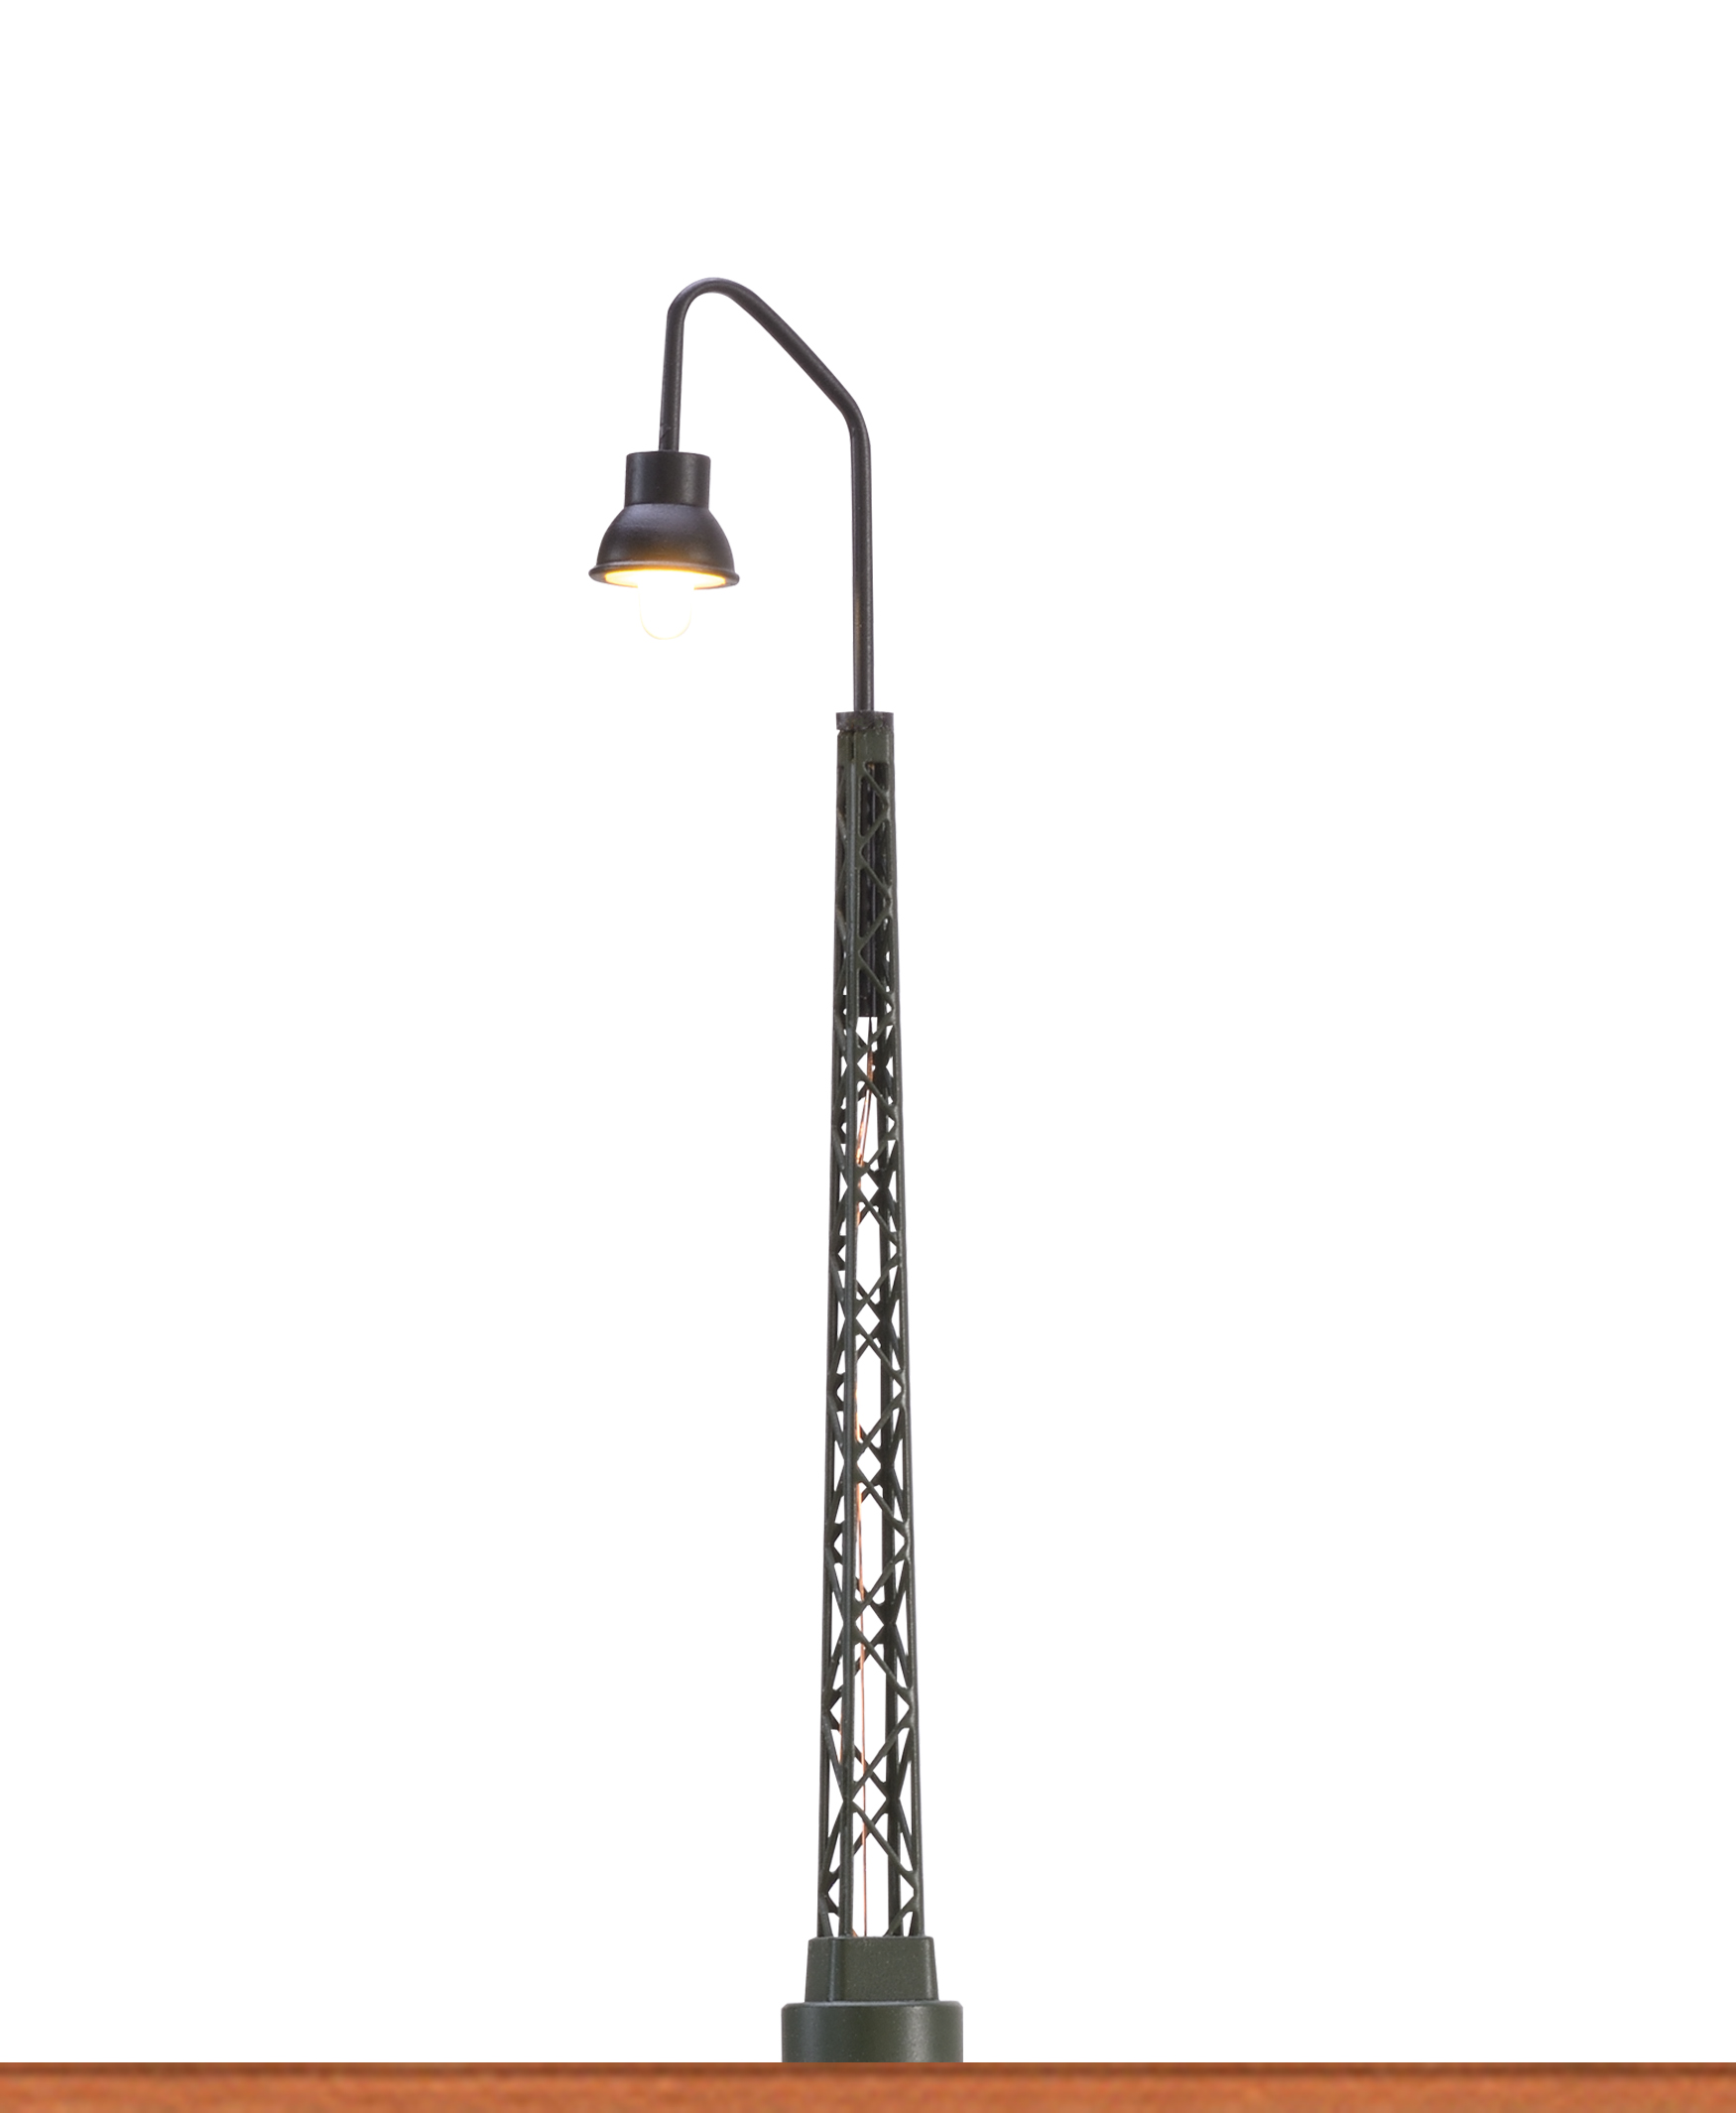 Gittermastleuchte LED, Stecksockeltechnik, Höhe 80 mm, N